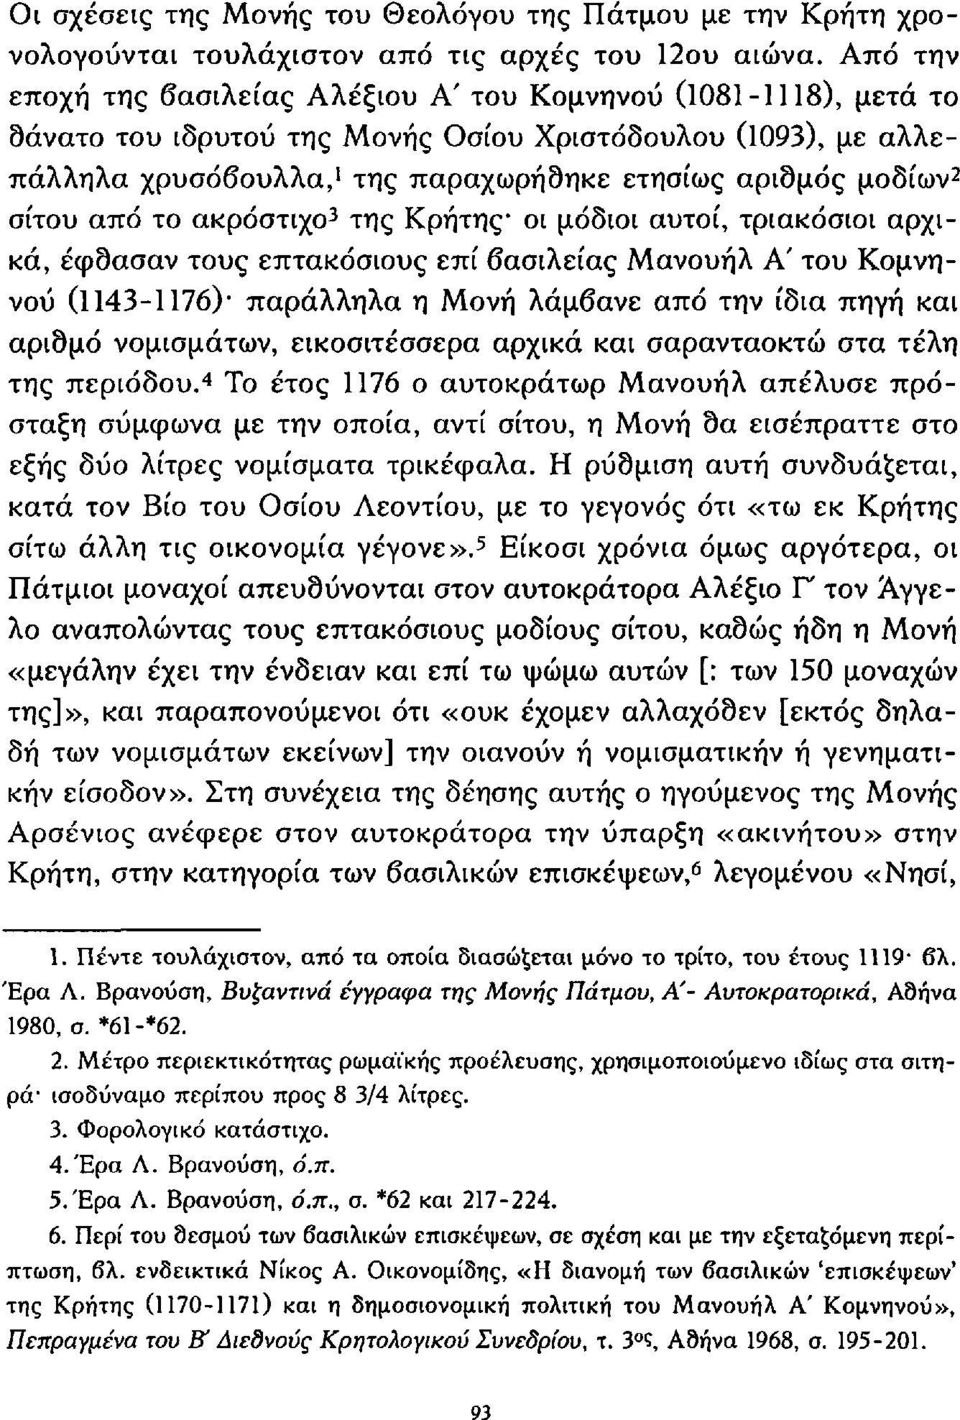 2 σίτου από το ακρόστιχο 3 της Κρήτης οι μόδιοι αυτοί, τριακόσιοι αρχικά, έφσασαν τους επτακόσιους επί βασιλείας Μανουήλ Α' του Κομνηνού (1143-1176) παράλληλα η Μονή λάμβανε από την ίδια πηγή και